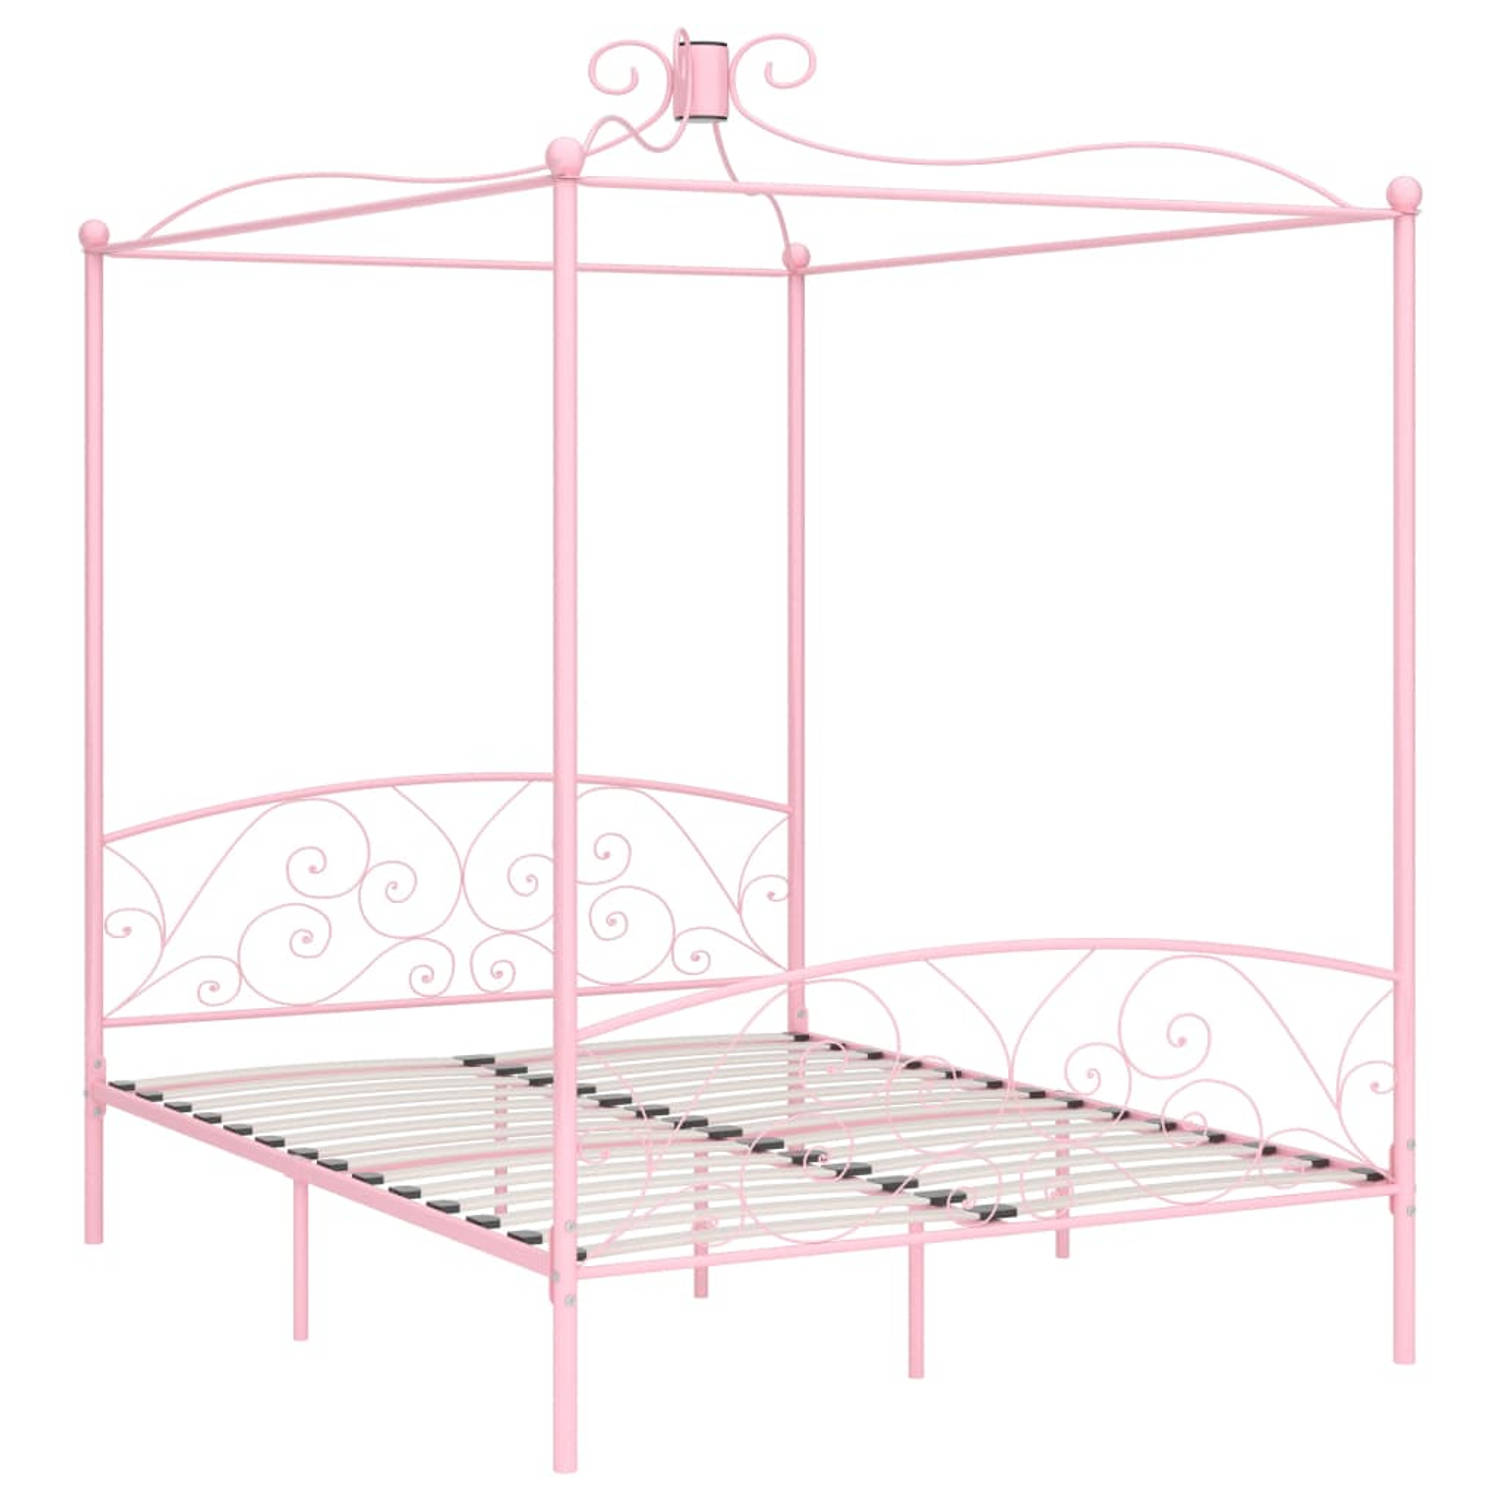 The Living Store Hemelbedframe metaal roze 180x200 cm - Bed